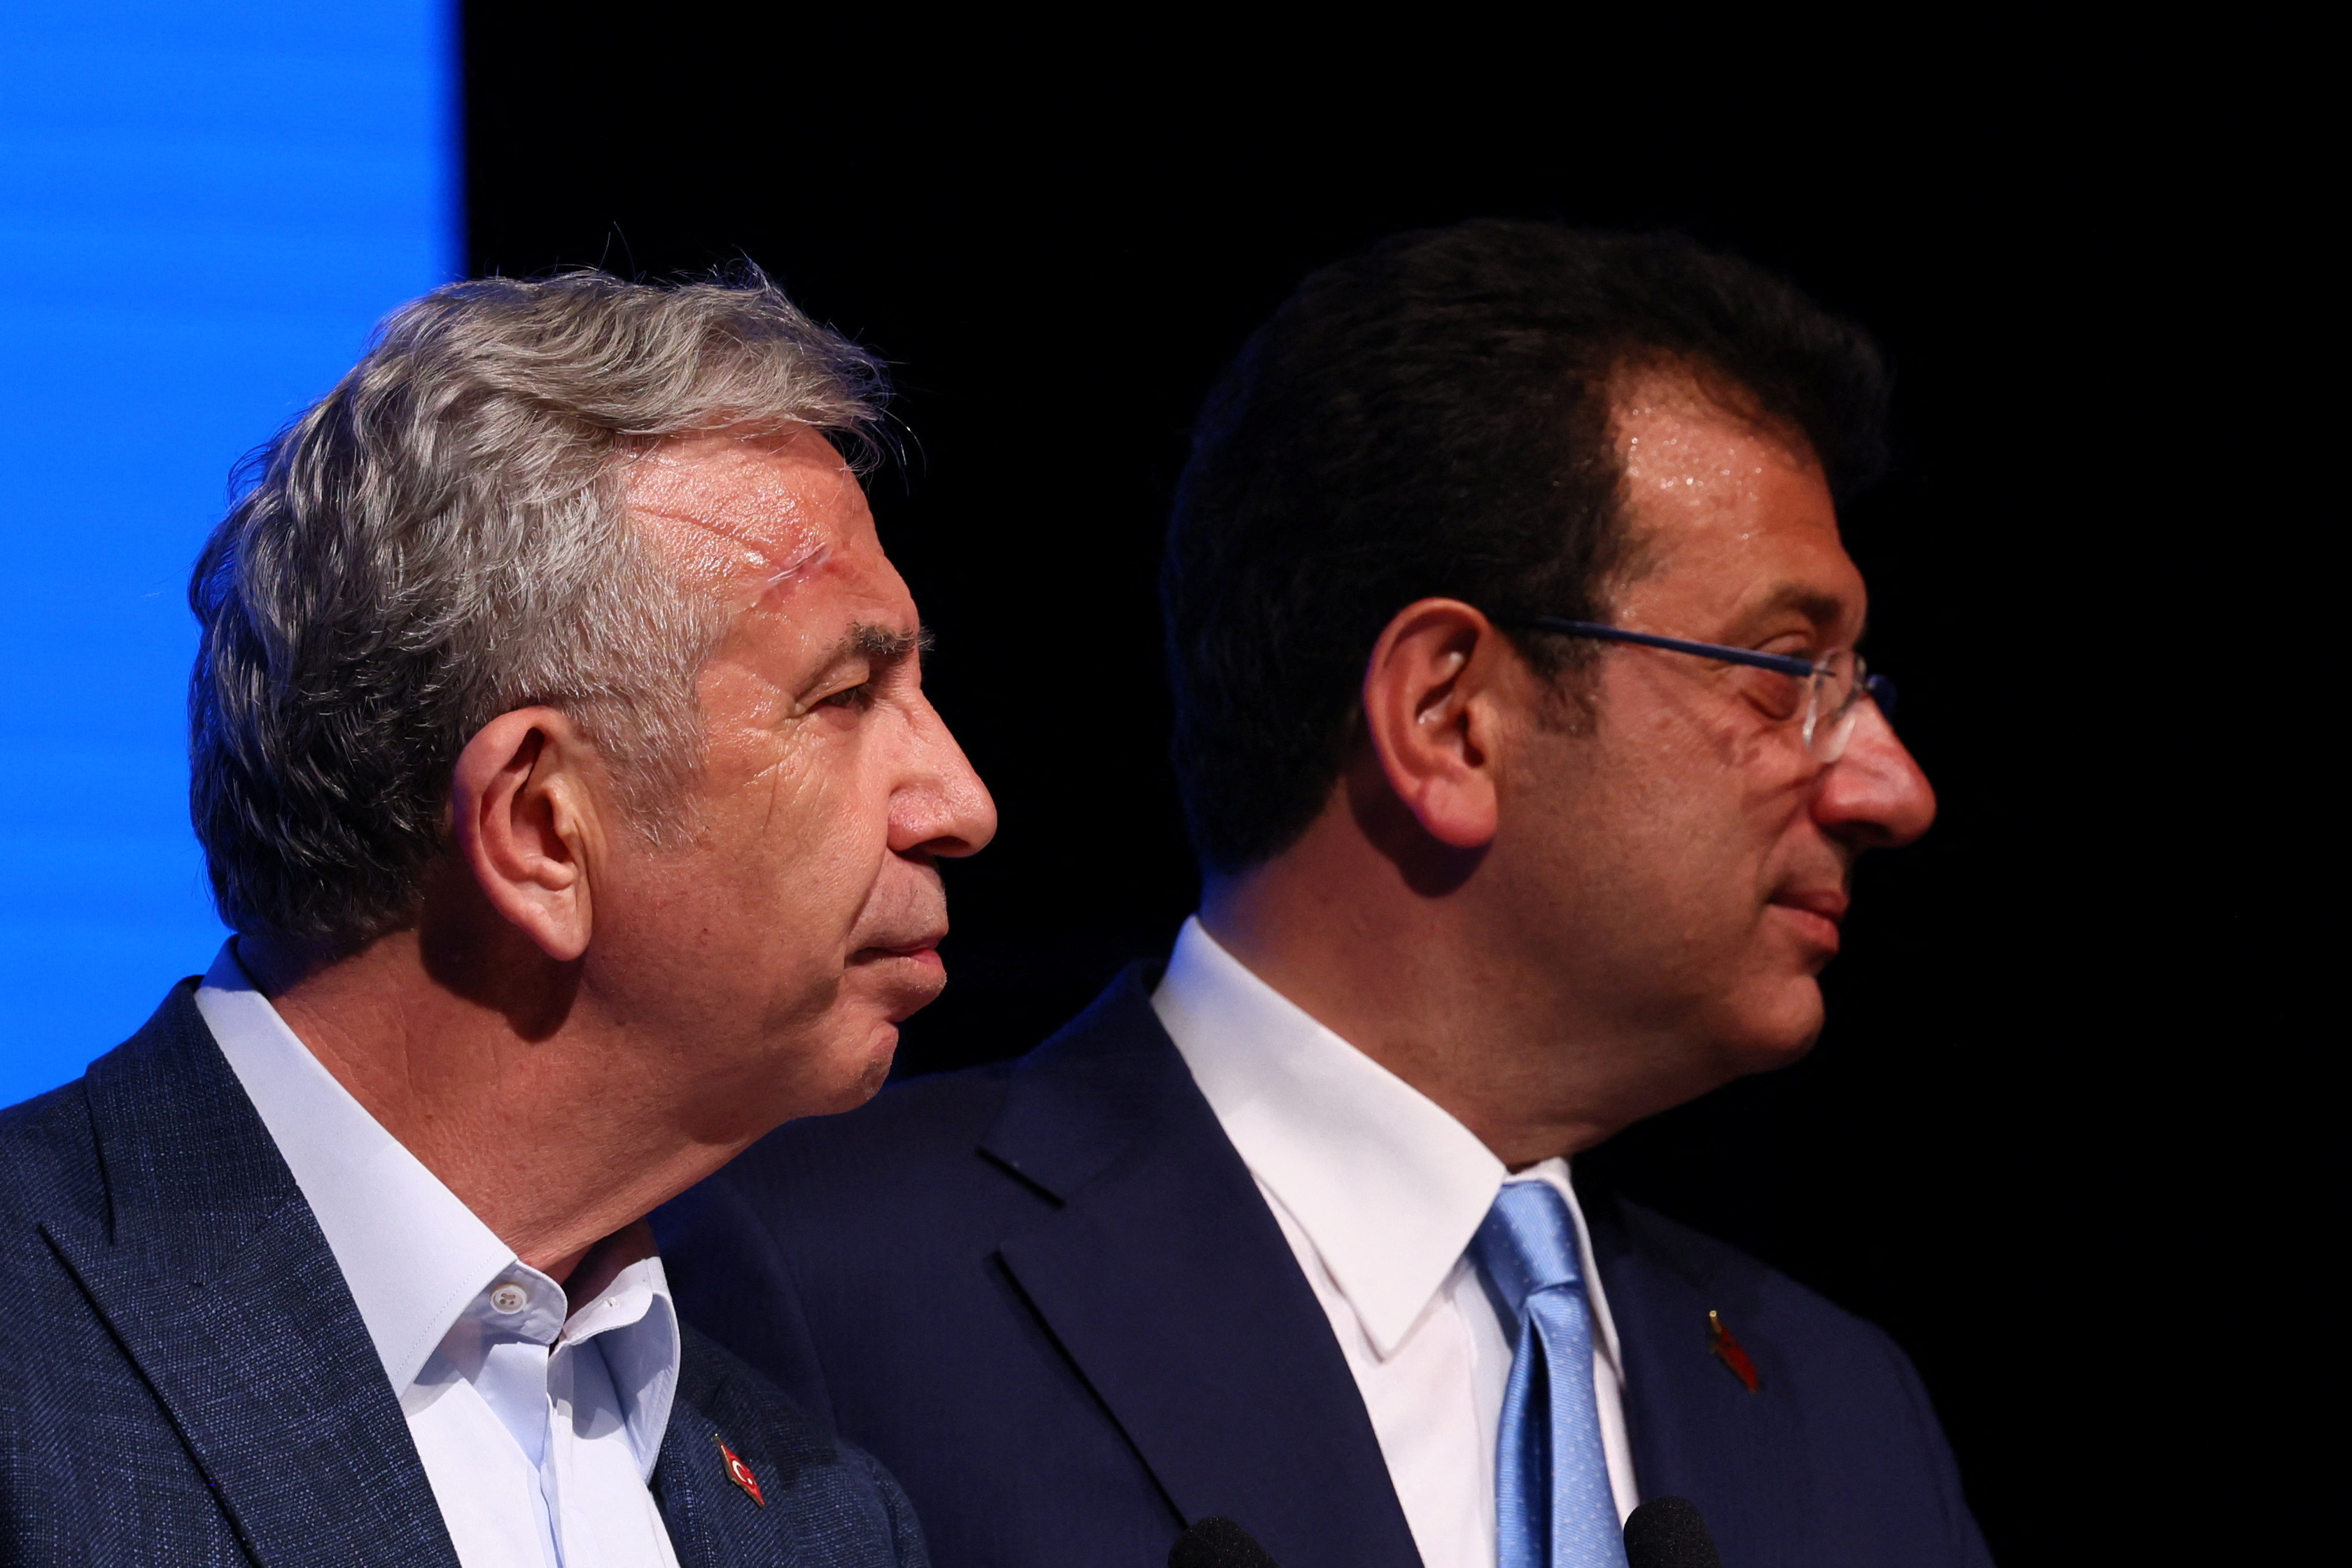 Εκλογές Τουρκία: Ξεκάθαρος ο Ιμάμογλου - «Ο Κιλιτσντάρογλου θα ανακοινωθεί ως ο 13ος πρόεδρος»